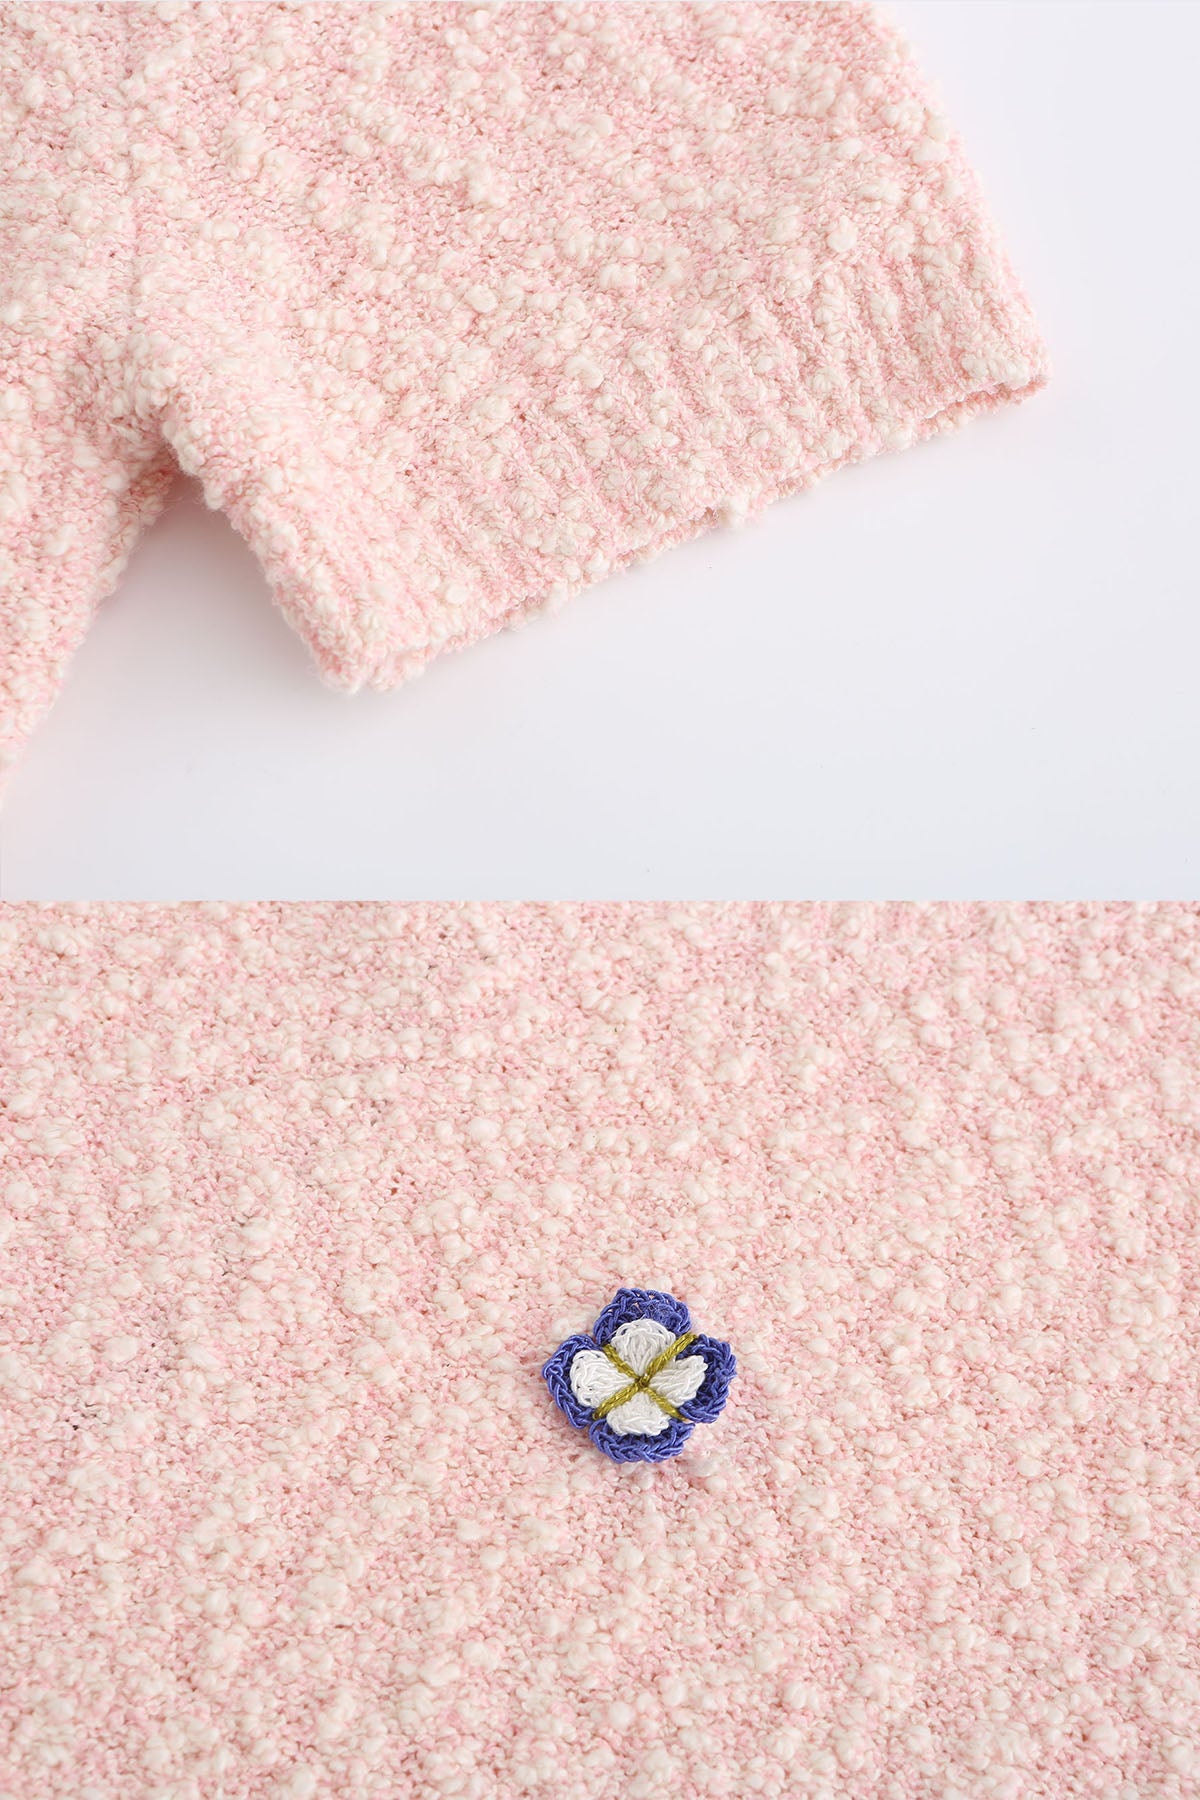 ZI II CI IEN | Misty Rose Knit Top